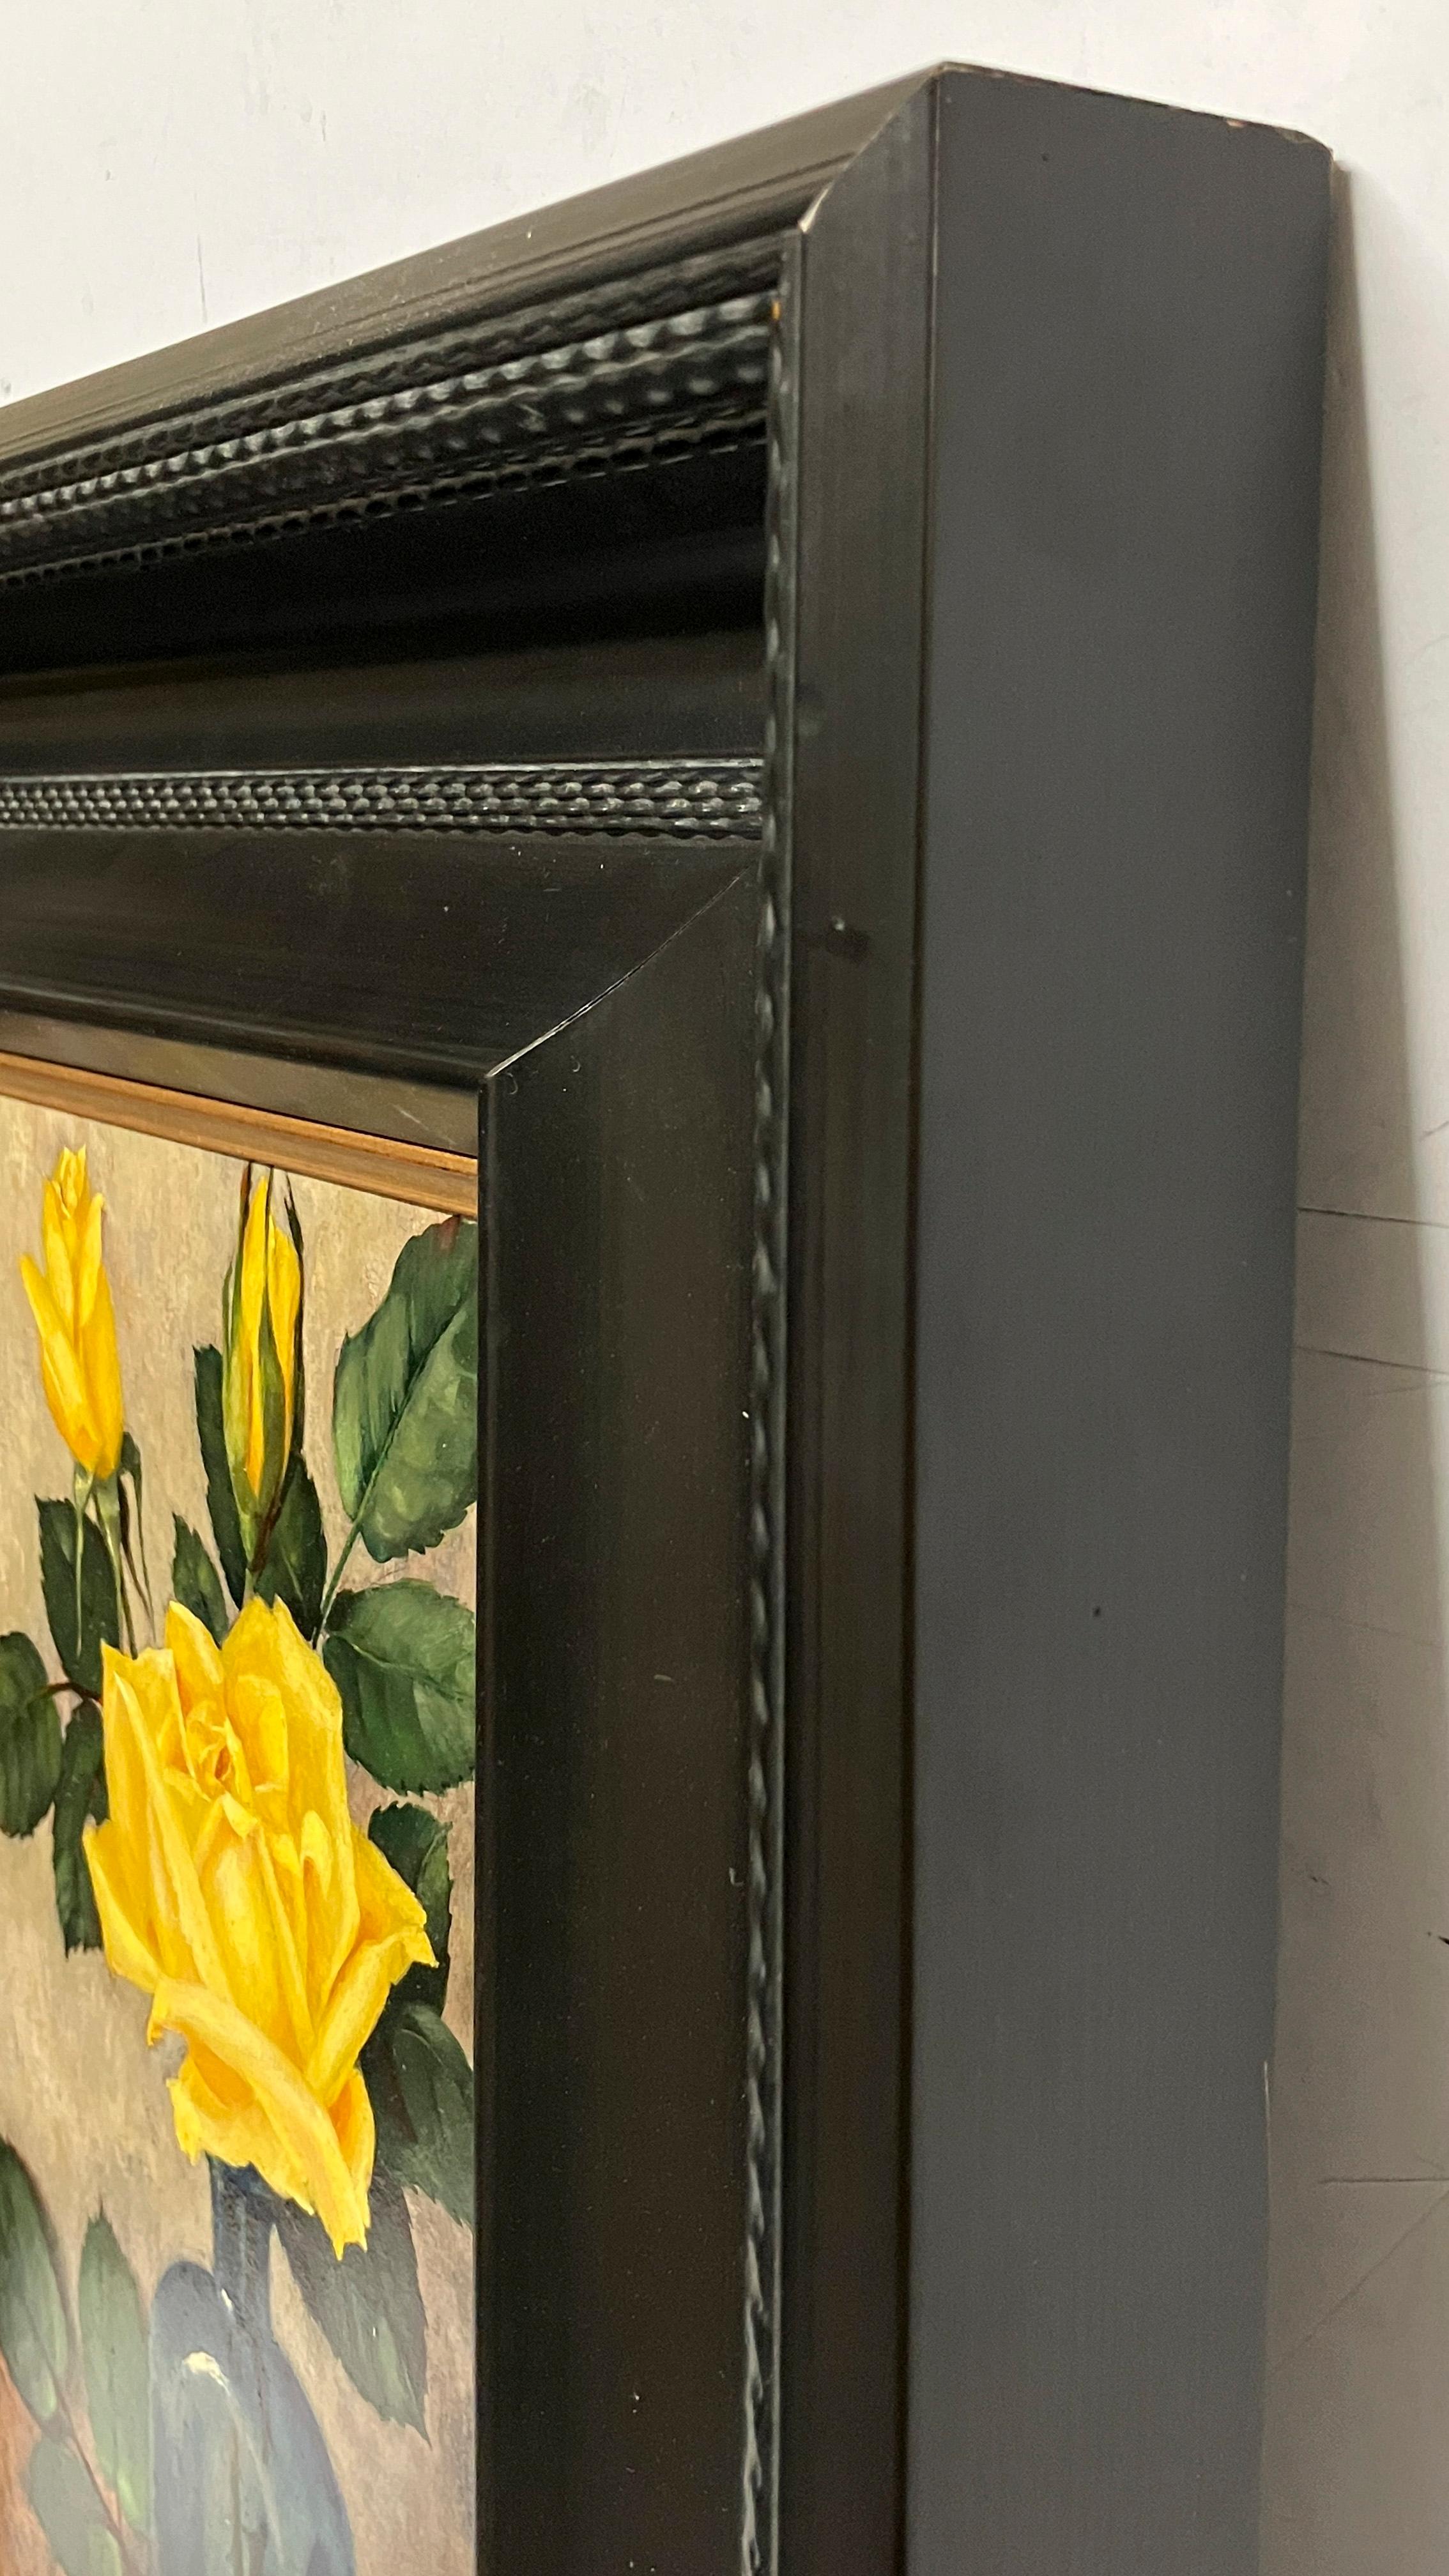 Une petite peinture exquise et précisionniste d'une rose jaune par l'artiste new-yorkais Harry Lane.

Les œuvres de Lane figurent notamment dans les collections du Metropolitan Museum of Art de New York et du Museum of Fine Arts de Boston.  Il est